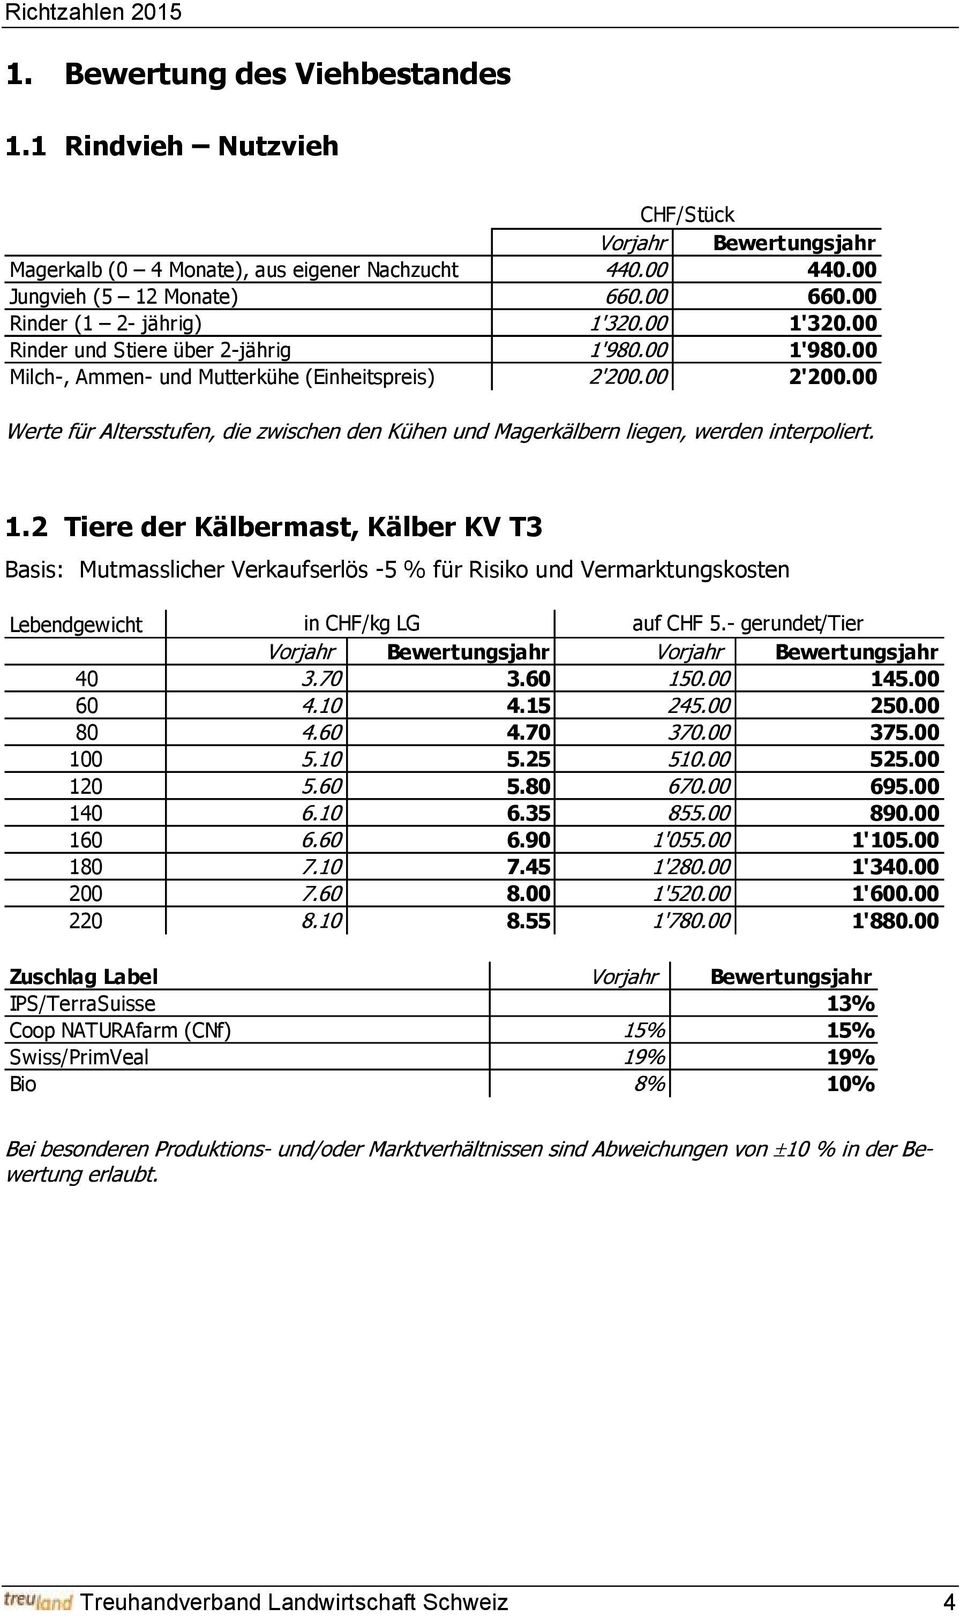 2 Tiere der Kälbermast, Kälber KV T3 Basis: Mutmasslicher Verkaufserlös -5 % für Risiko und Vermarktungskosten Lebendgewicht in CHF/kg LG auf CHF 5.- gerundet/tier 40 3.60 145.